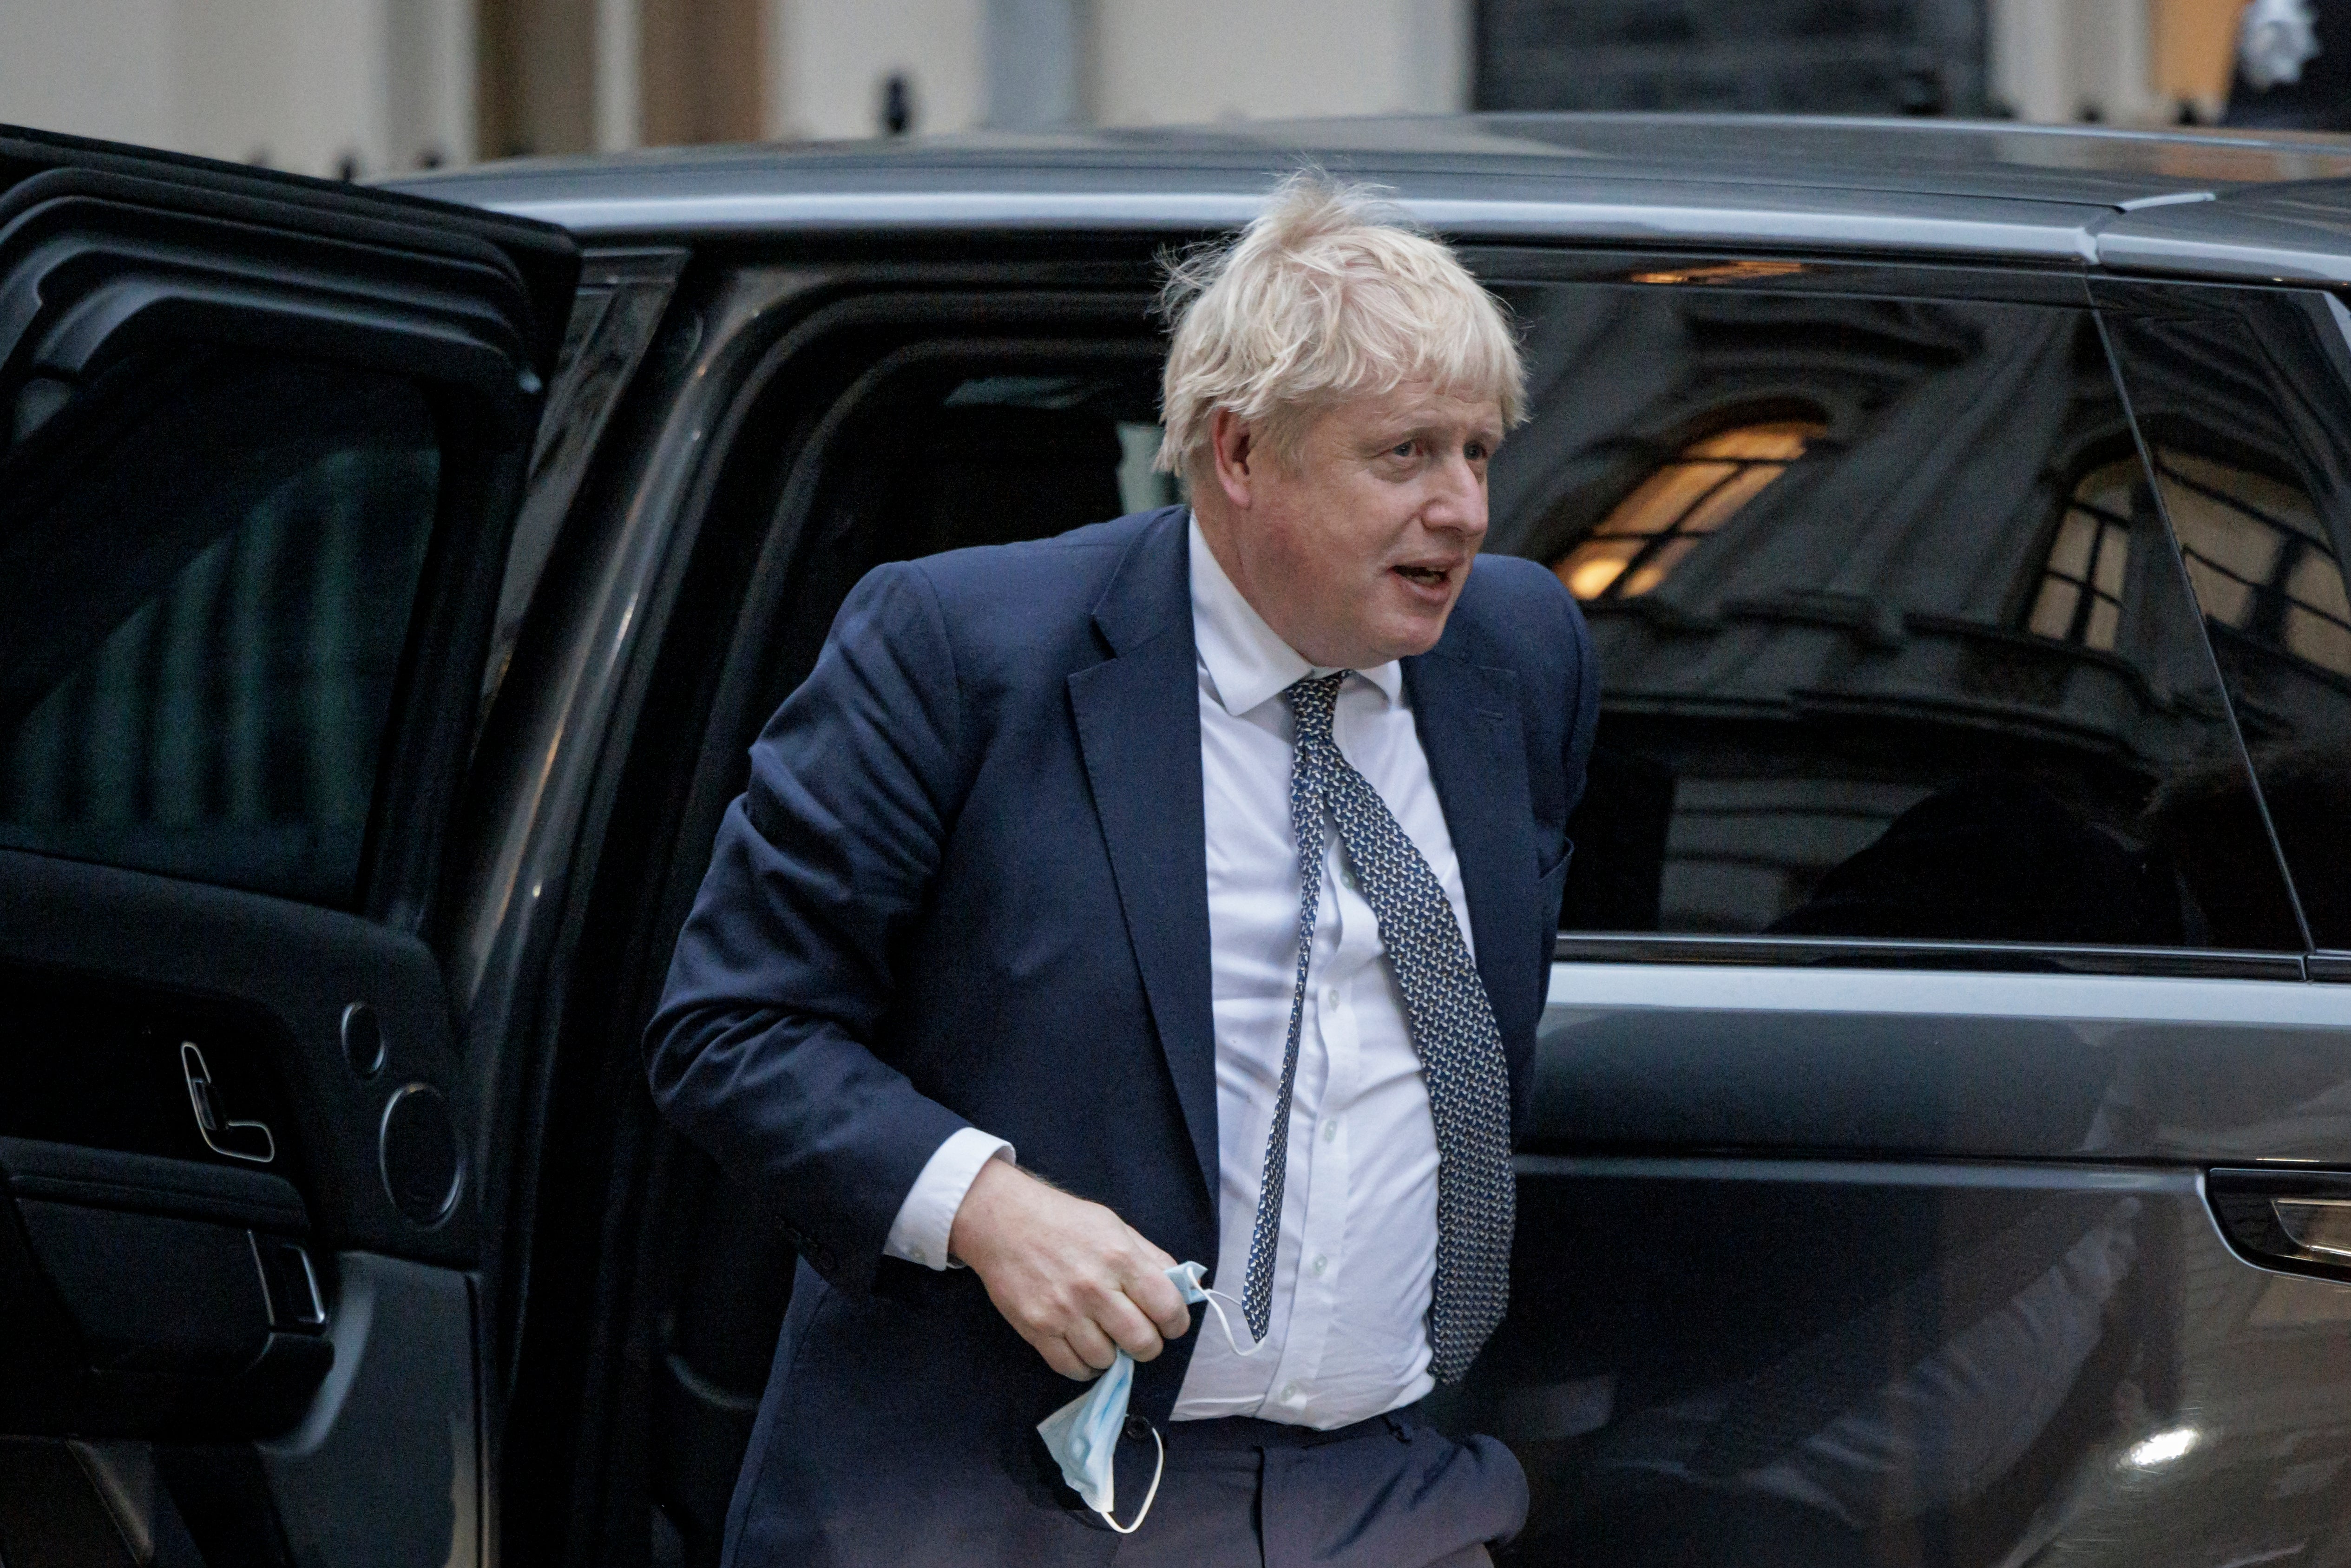 Boris Johnson has allegedly broken lockdown rules